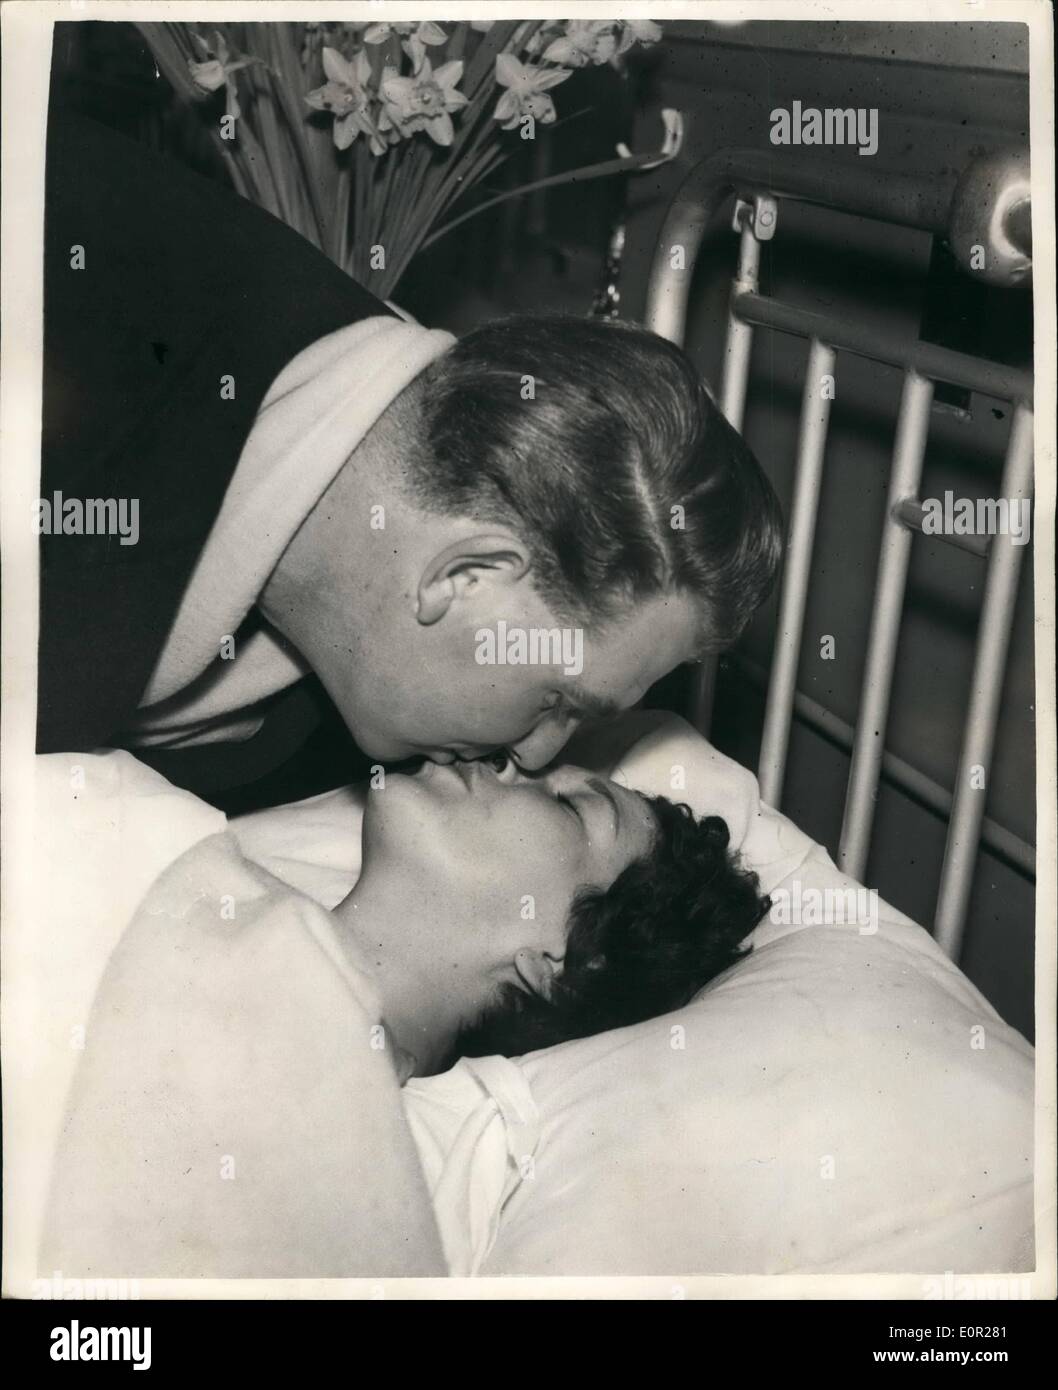 12. Dezember 1957 - paar wieder vereint In Lewisham Krankenhaus - nach dem tragischen Schiene Katastrophe... Eines der Opfer der Katastrophe Lewisham Zug - war 24 Jahre alte Frau Josephine Taylor von Beckenham, Kent... Sie wurde in den Trümmern gefangen, ihre Beine gebrochen und waren hin und her gerissen... Während sie von der Verwicklungen Masse zertrümmerten Wagen und den Körpern der Mitreisenden - gerettet wird wurde war sie beunruhigend über ihren Ehemann Ken - wer dachte sie im gleichen Zug gewesen wäre... Das Paar wurden gestern in Lewisham Krankenhaus - wiedervereinigt und trotz ihrer schrecklichen Verletzungen Josephine freute sich wieder. Stockfoto